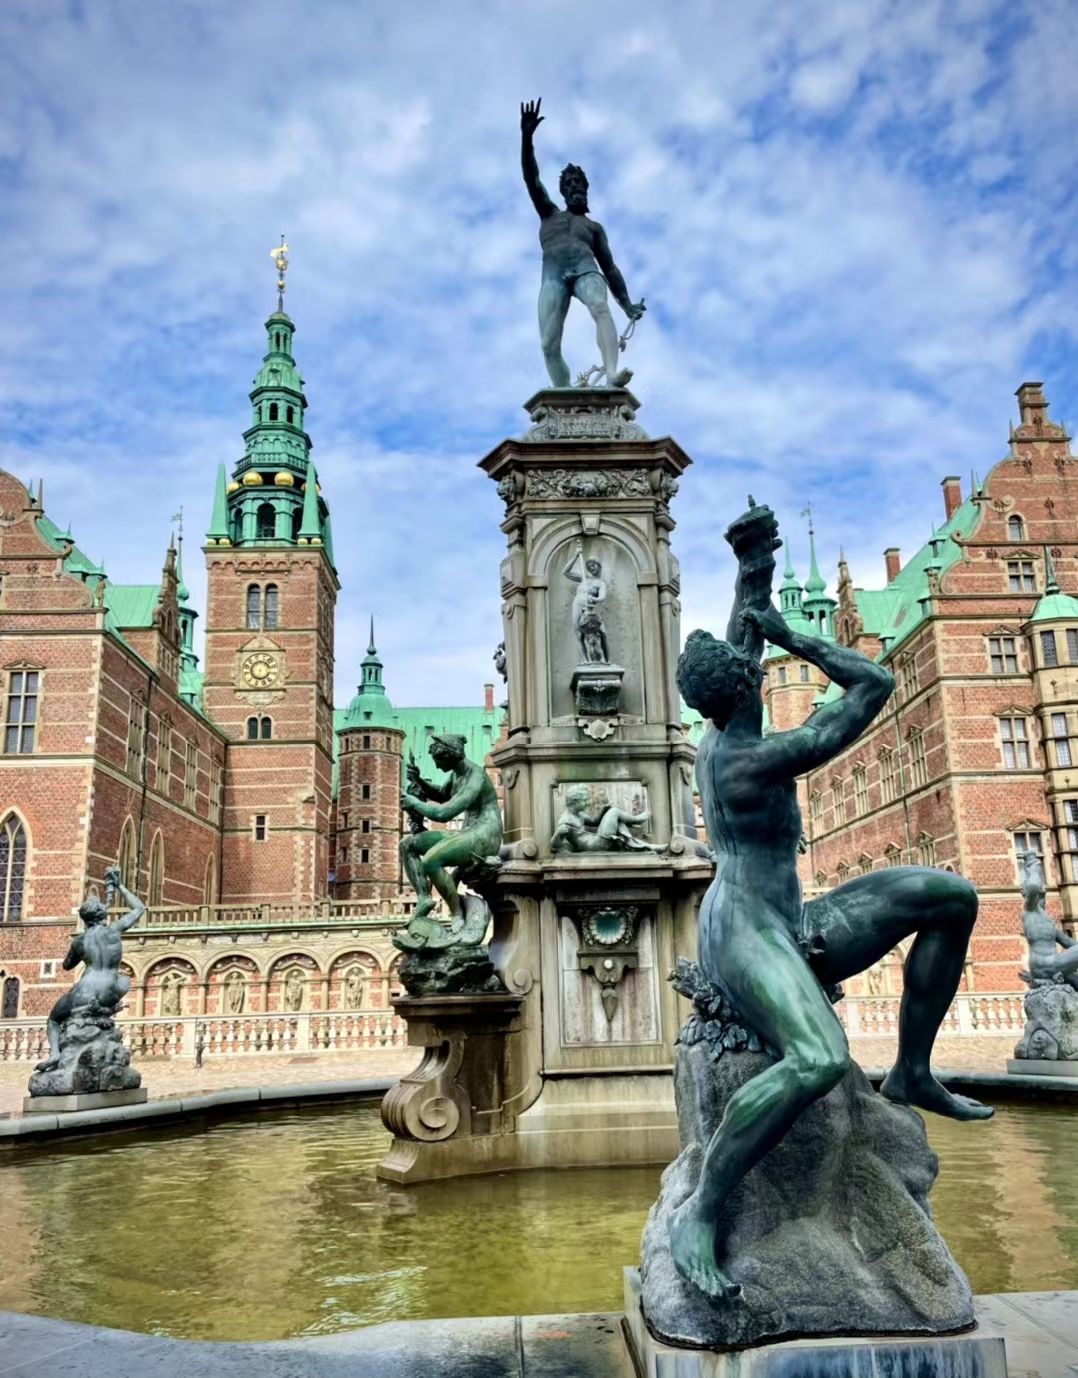 丹麦的历代君王都爱炫富，狩猎园几个都不够，城堡也修得一个比一个大。 今天去看的腓特烈堡最有魅力的地方